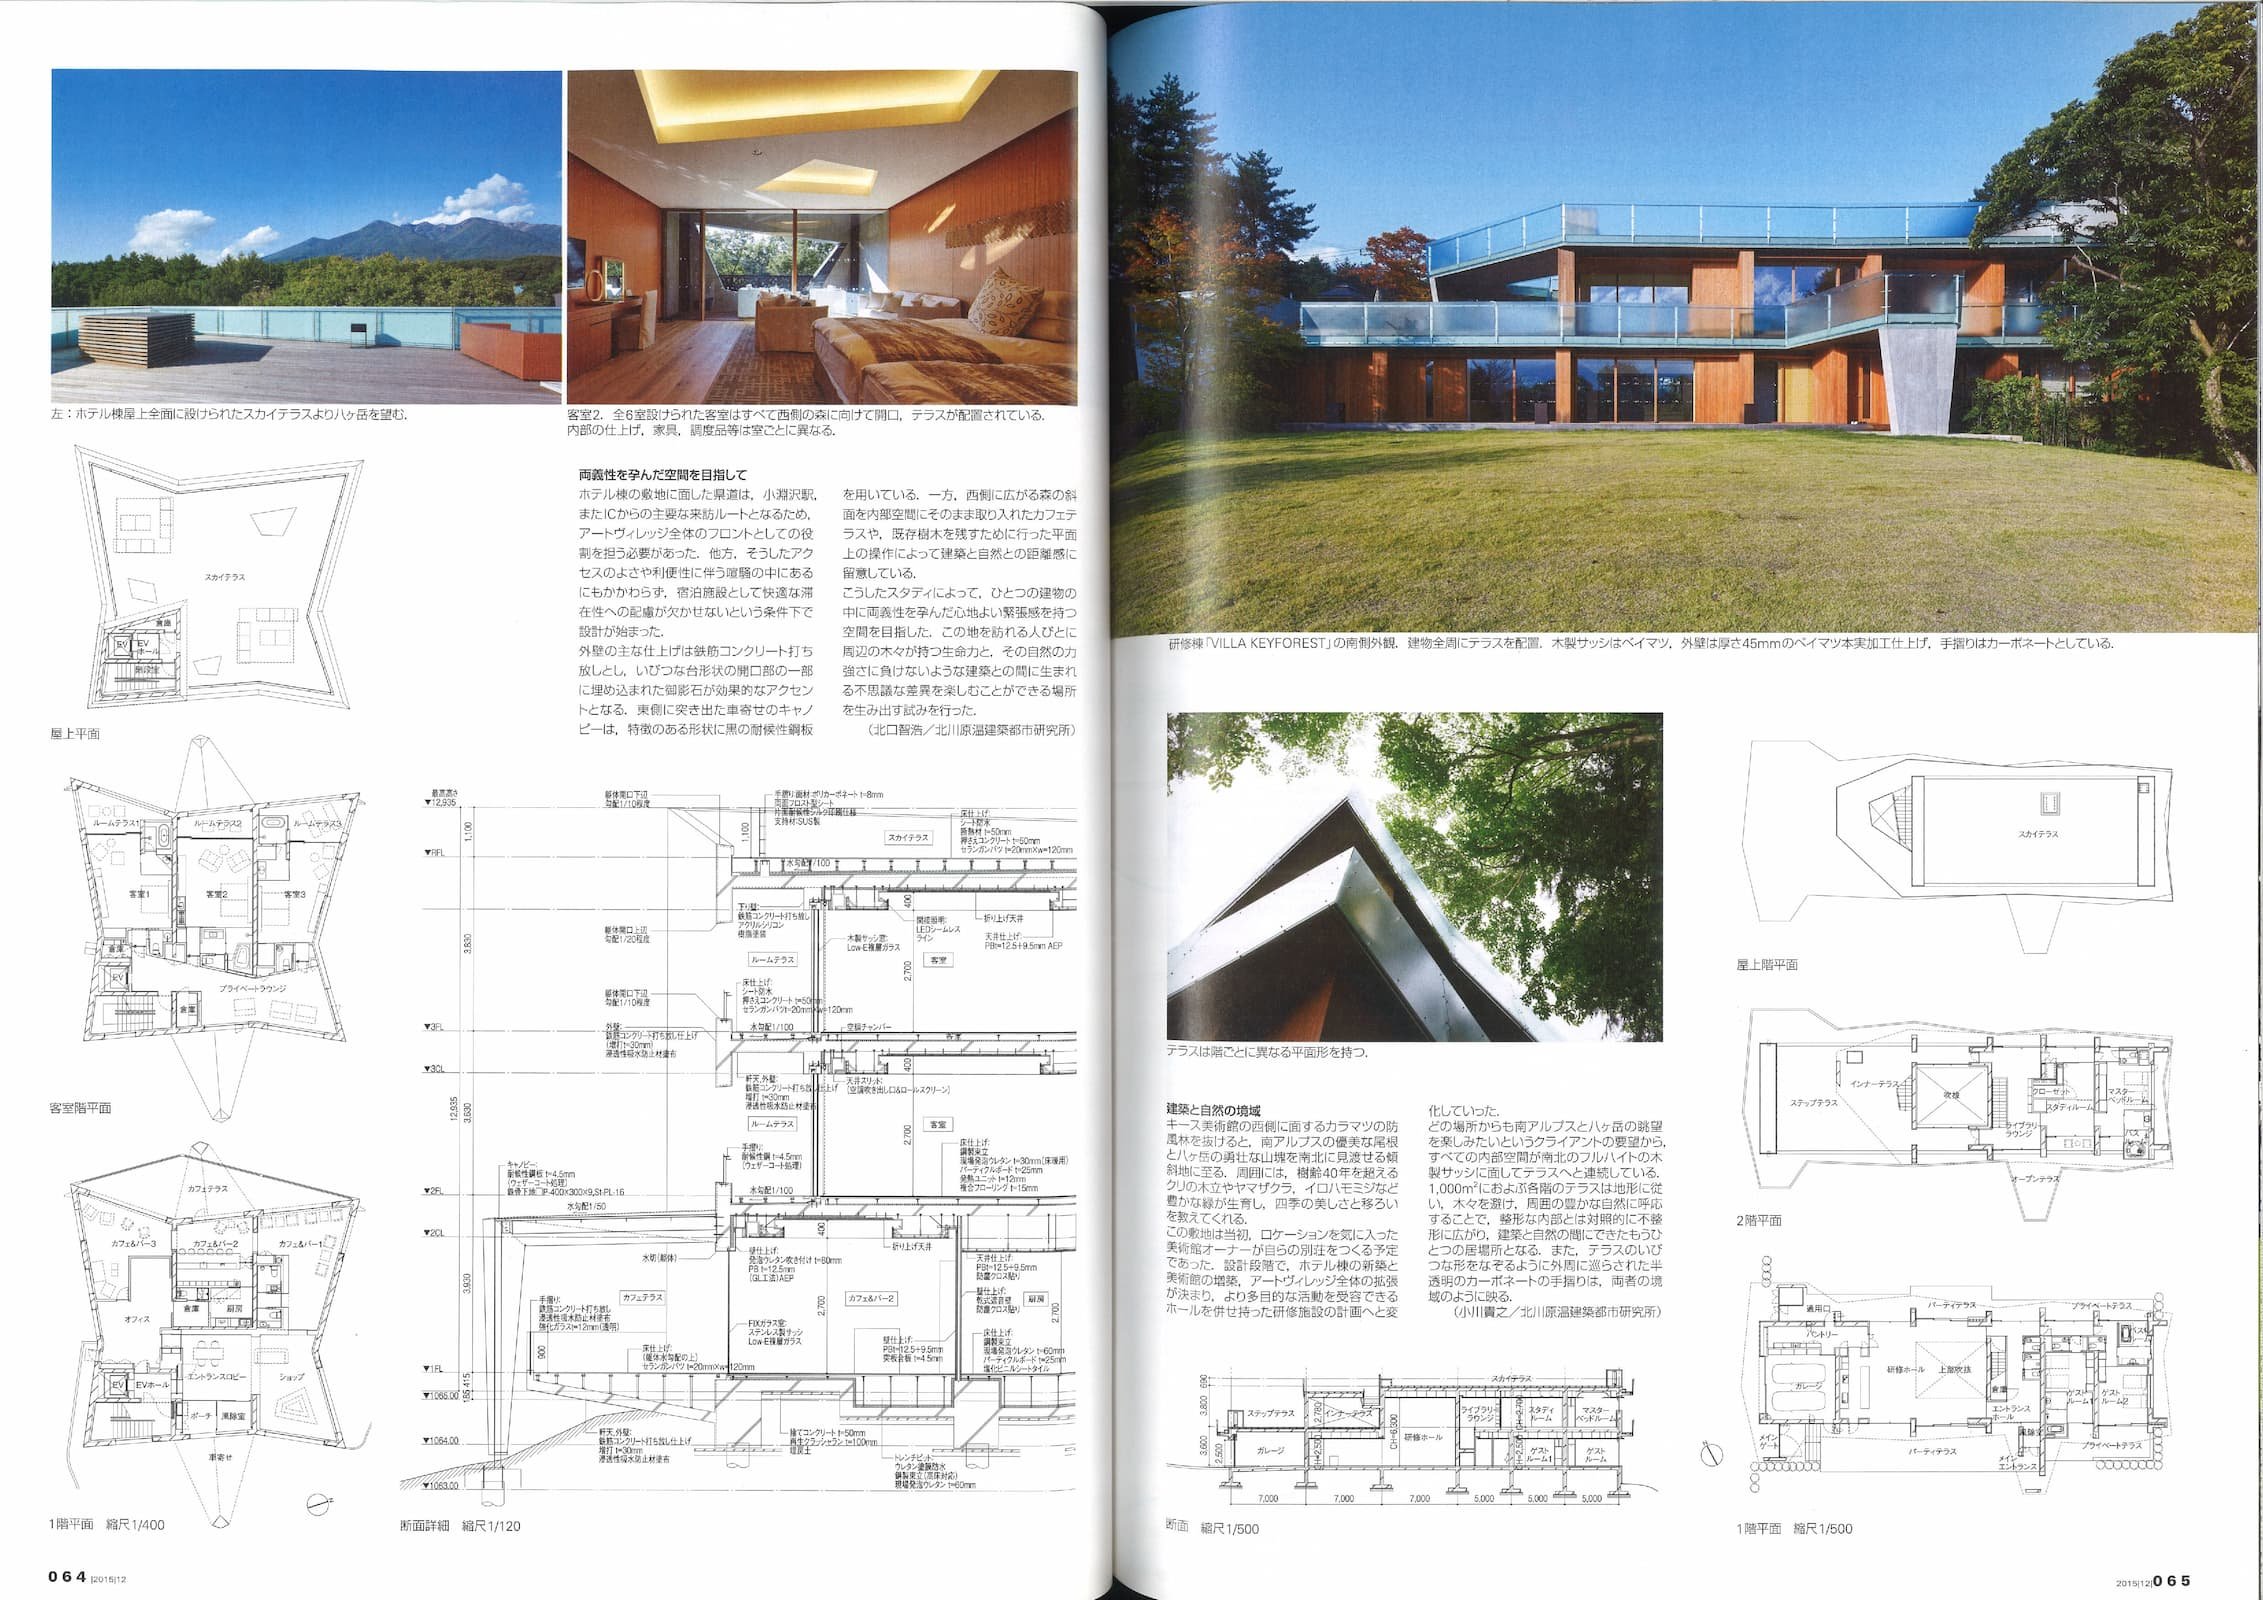 新建築 - New Architecture 90 - Nakamura Keith Haring Collection_Page_8.jpg